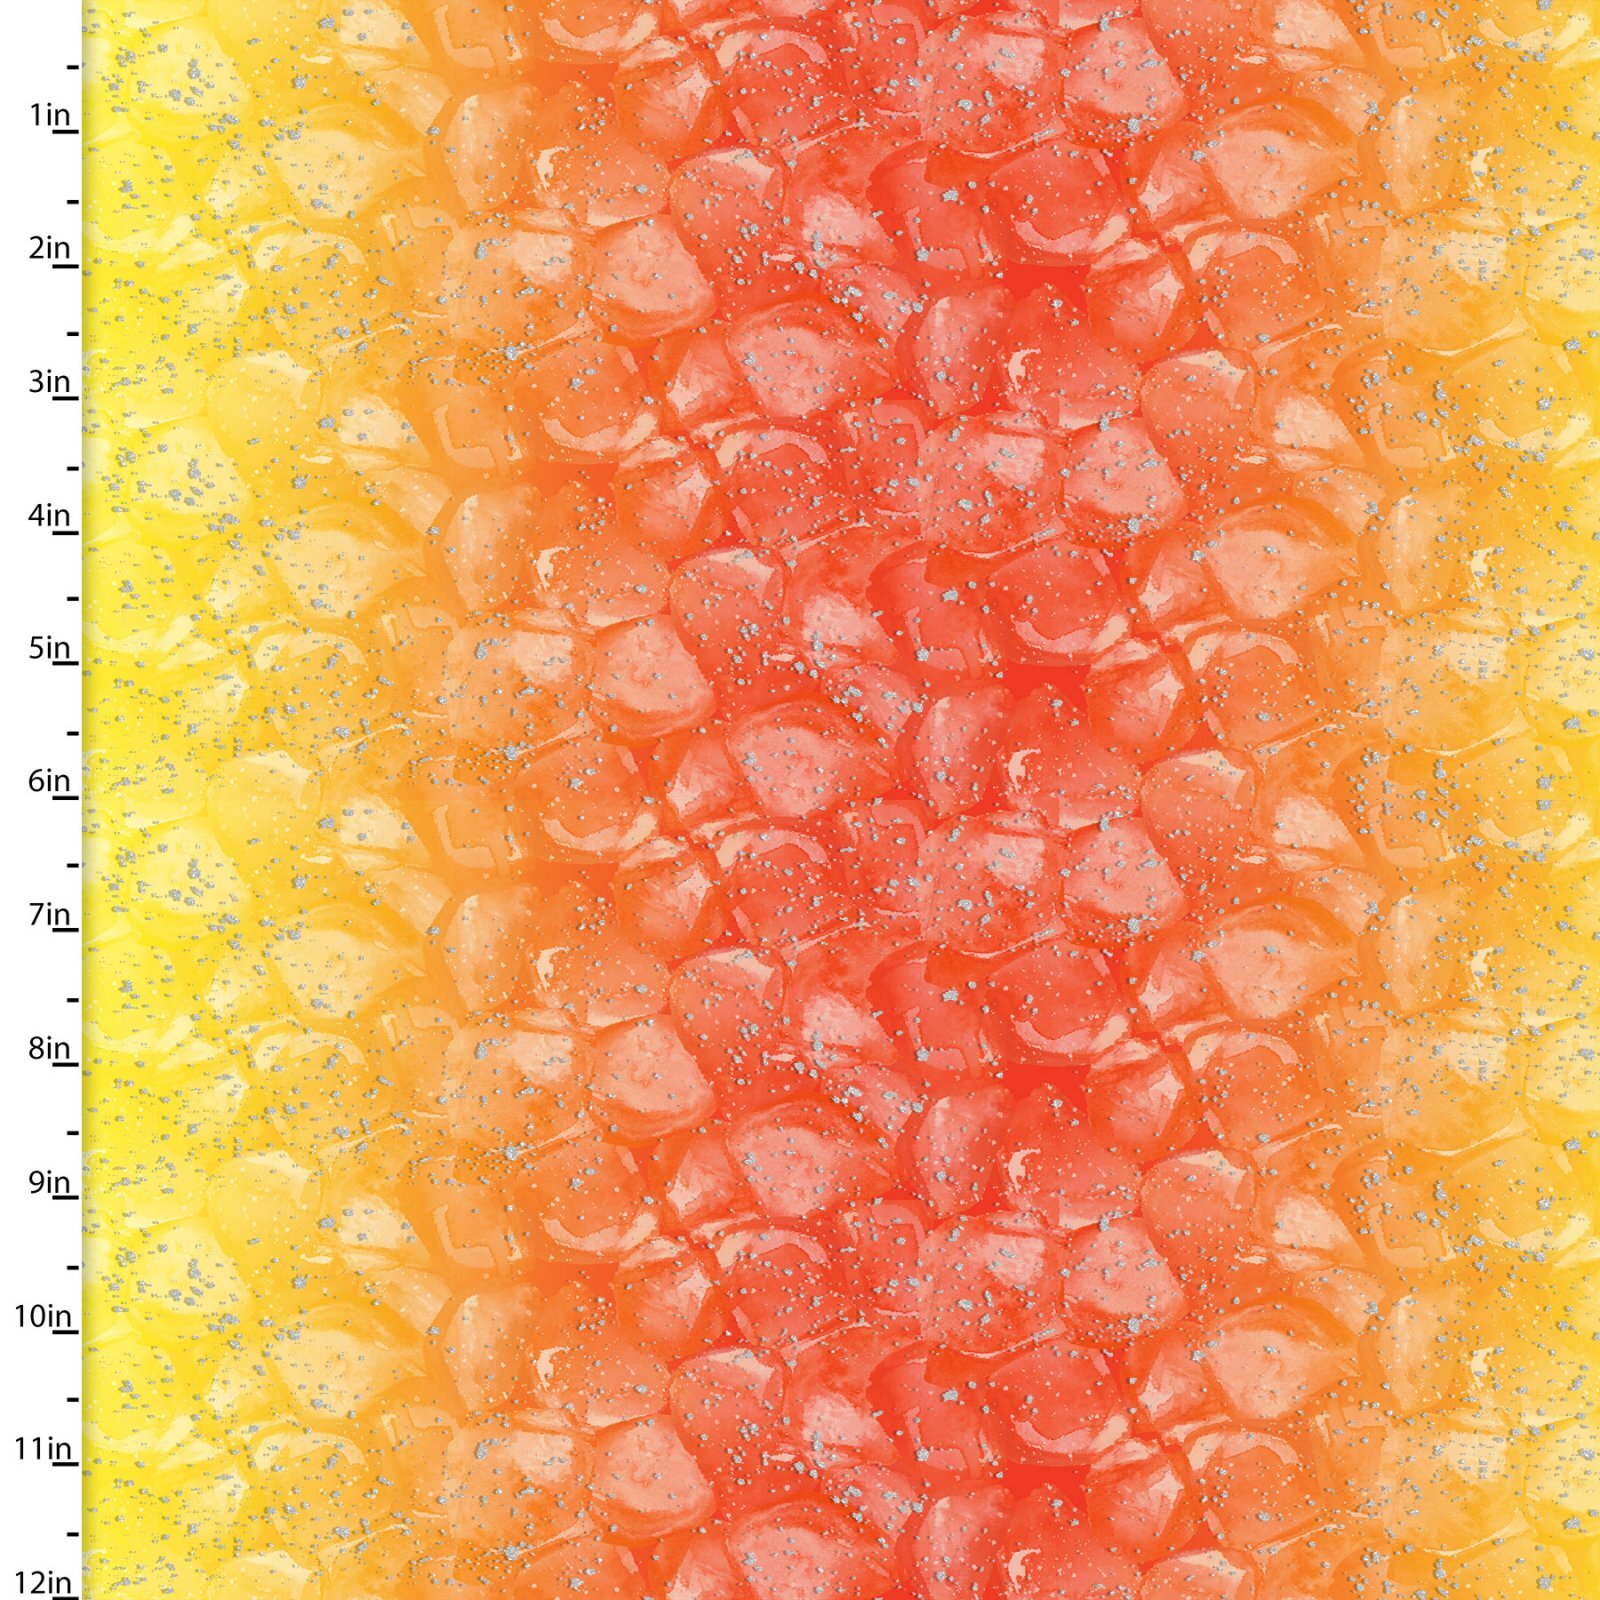 Mixology - Orange/Yellow Ice with Glitter - 1/2m cut 58487